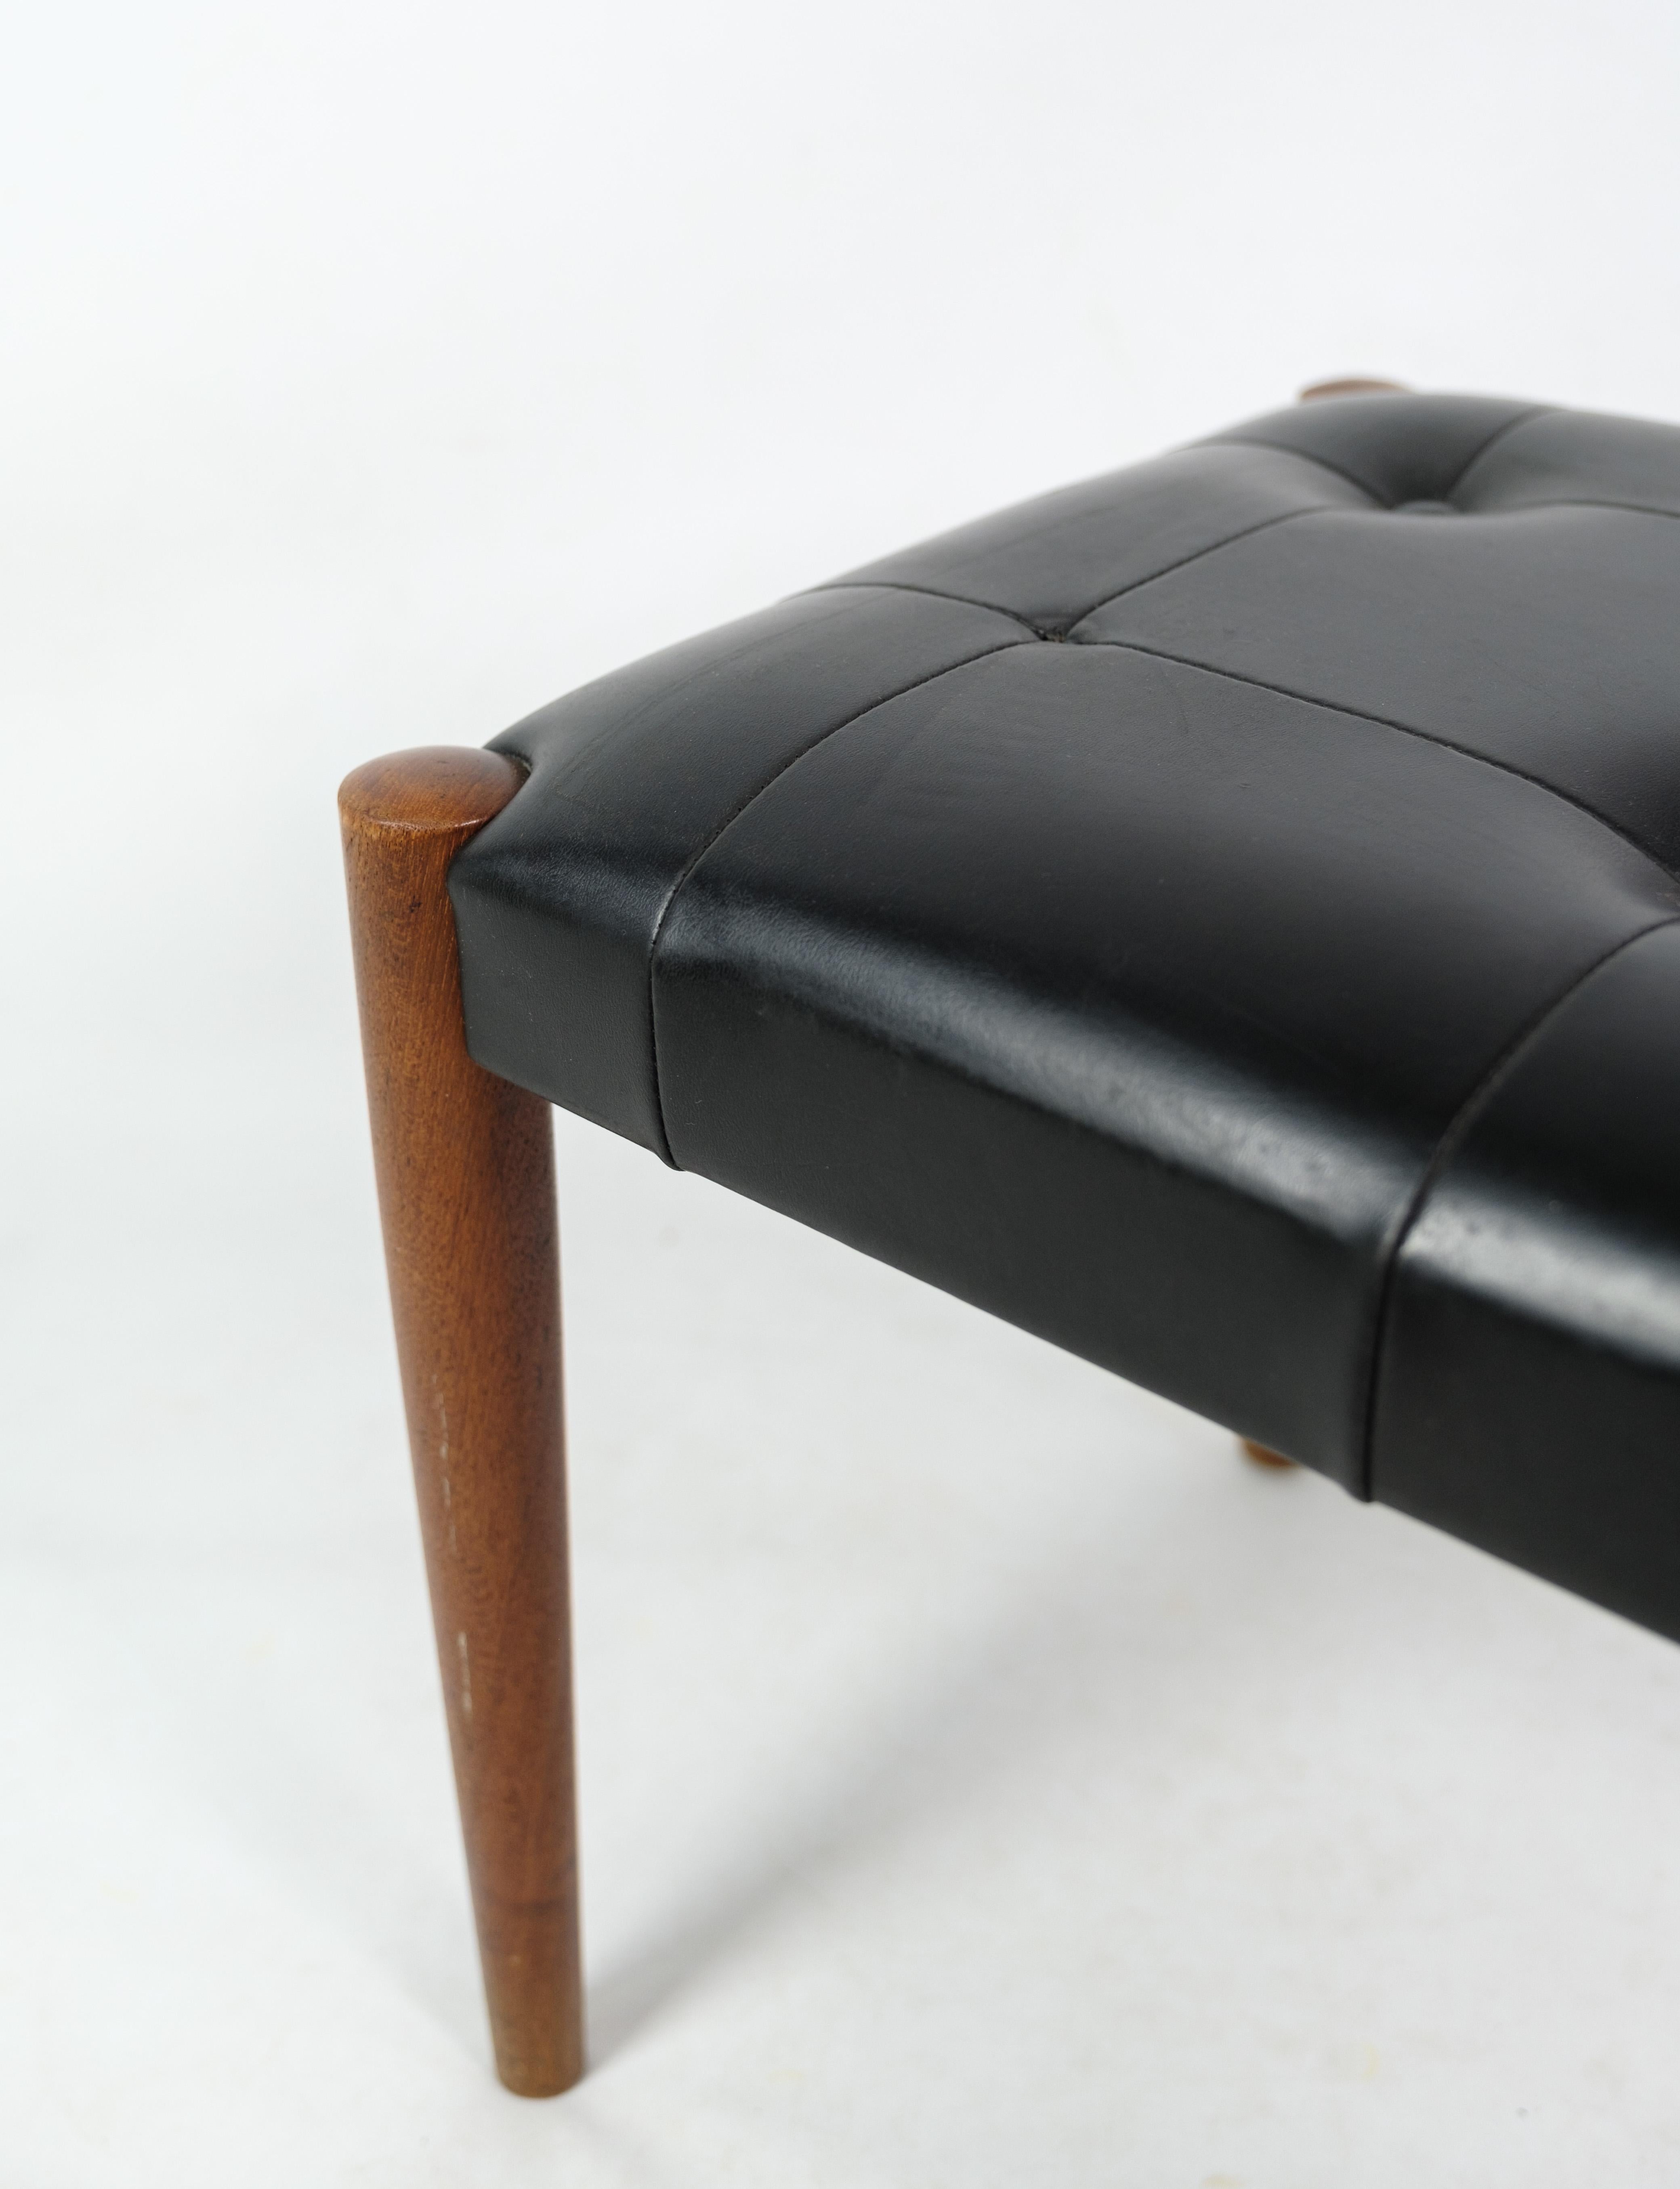 Tabouret, conçu par Erik Jørgensen - Corinthe du design danois des années 1960. Le tabouret a des pieds en teck et du cuir artificiel. Une chaise en très bon état d'origine. Il manque un bouton qui sera réparé dans notre atelier avant l'expédition.